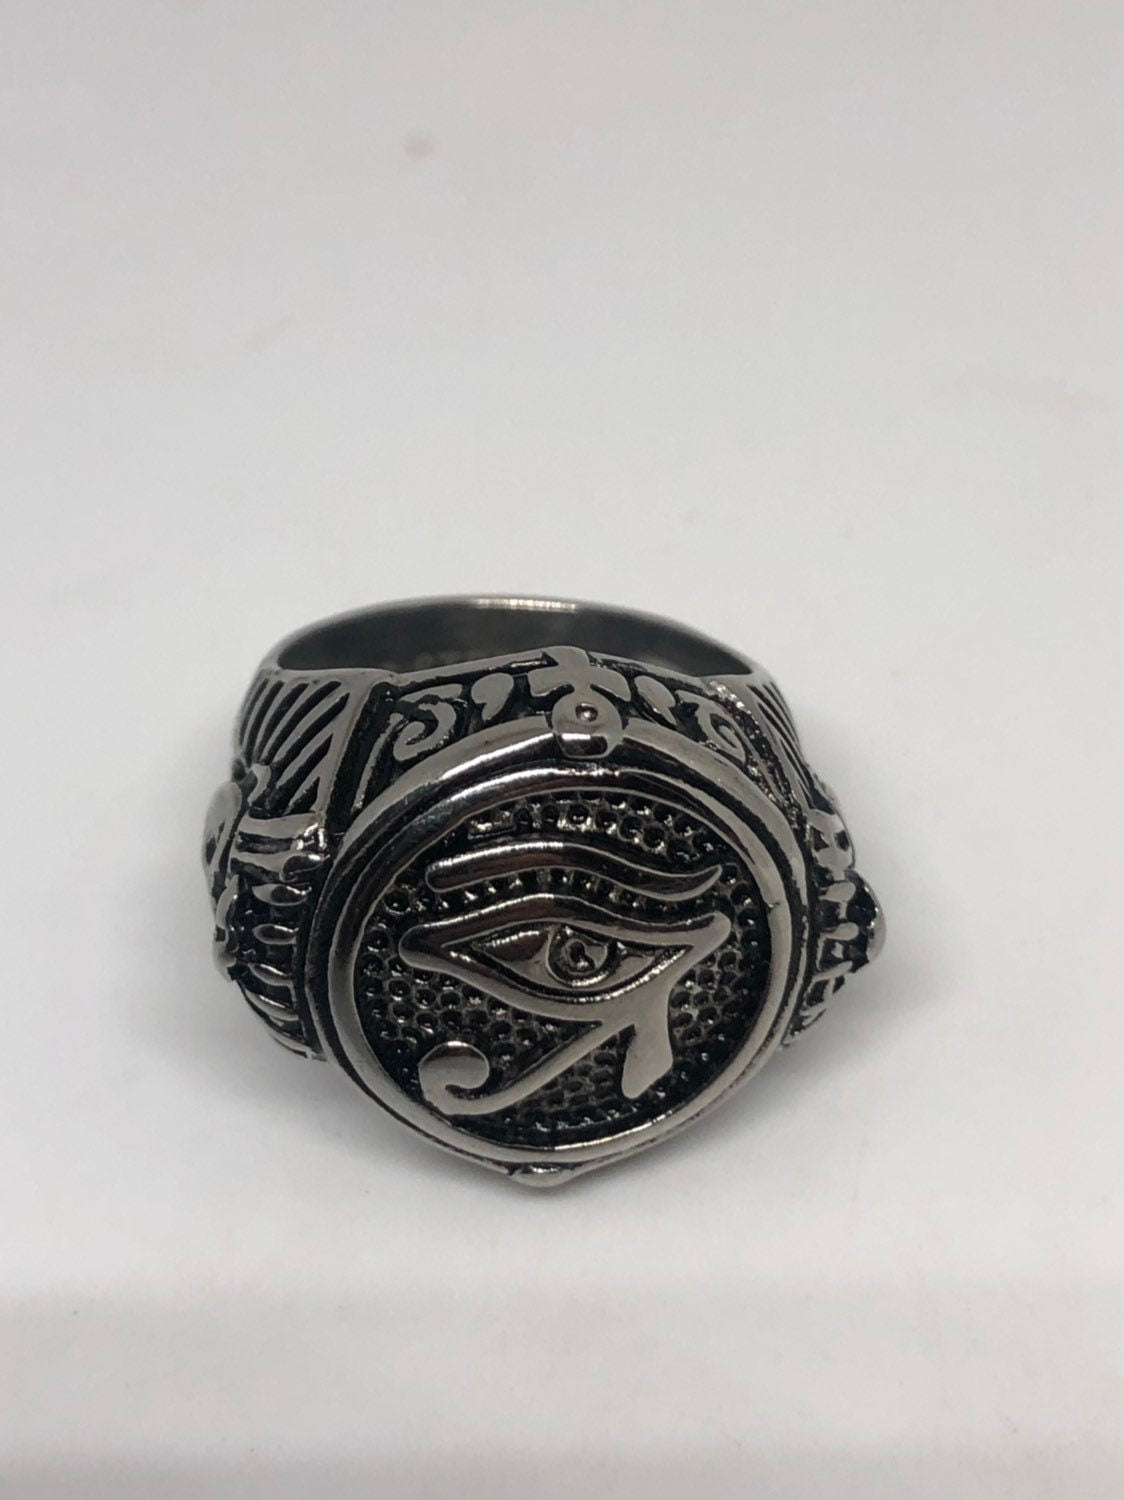 Vintage Silver Stainless Steel Egyptian Ankh Horus Eye Men's Ring